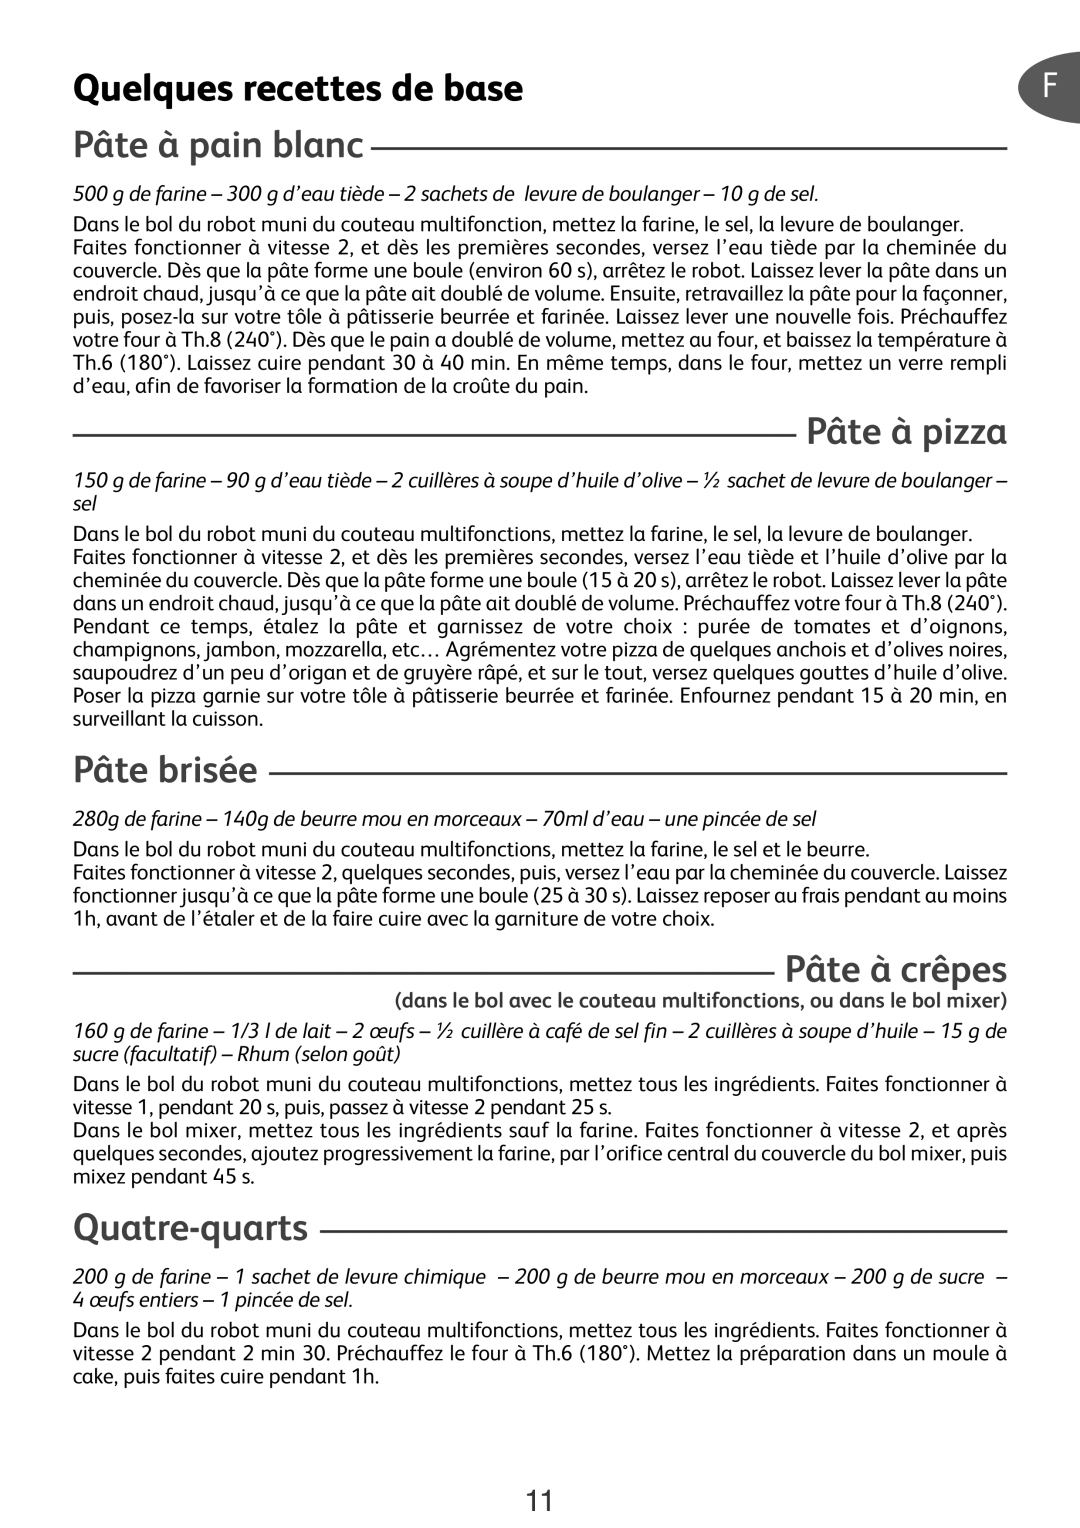 Tefal DO250DCH manual Quelques recettes de base, Pâte à pain blanc, Pâte à pizza, Pâte brisée, Pâte à crêpes, Quatre-quarts 